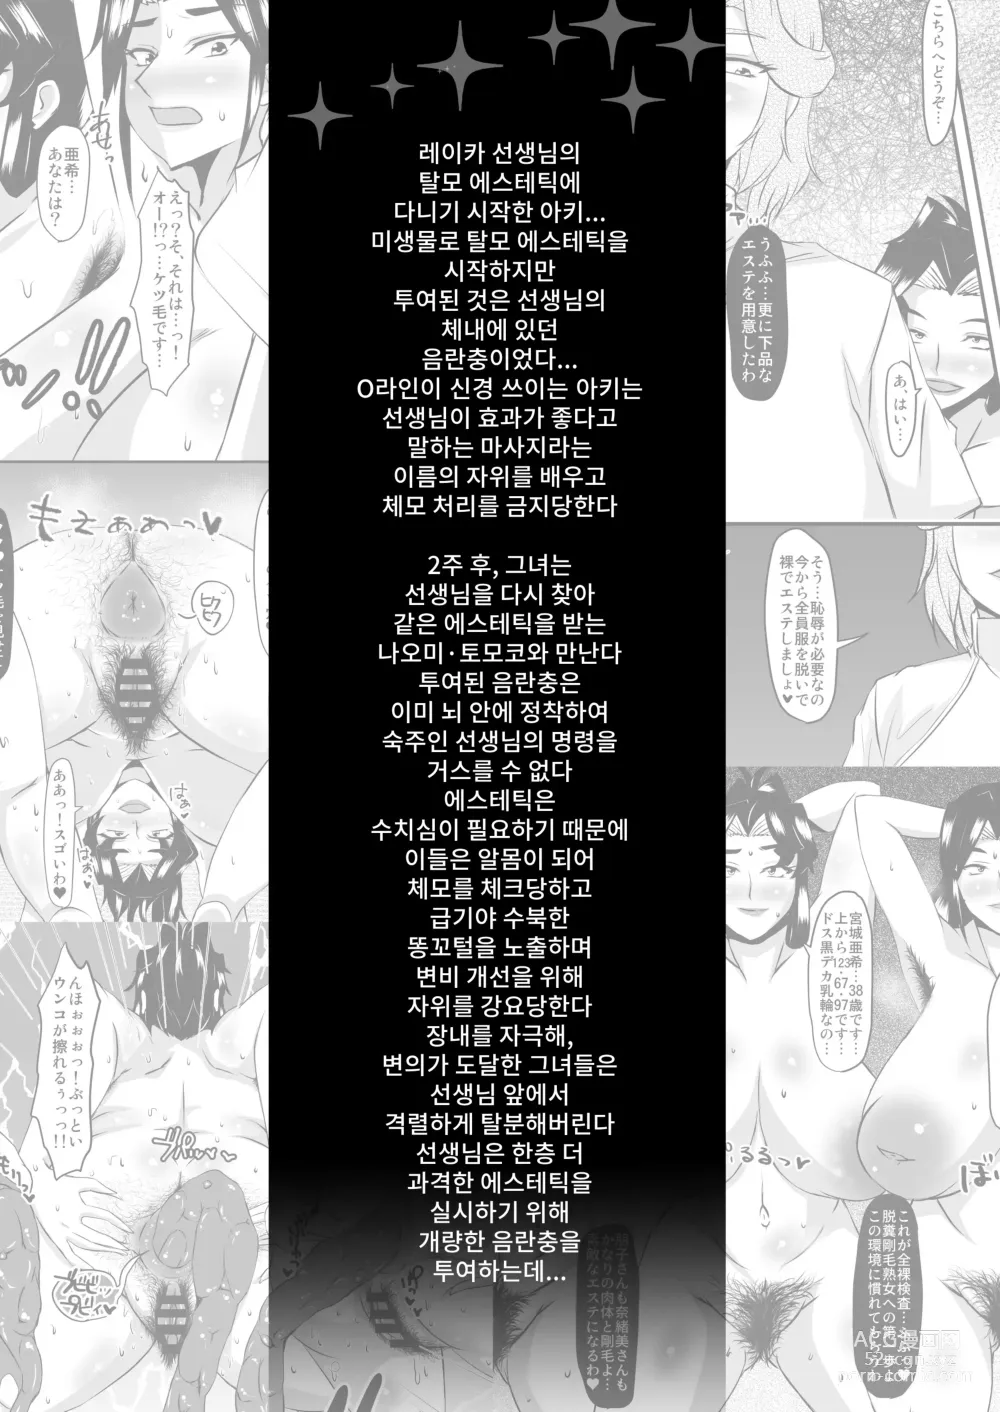 Page 2 of doujinshi 레이카 선생님의 음란충 똥구멍 에스테틱3